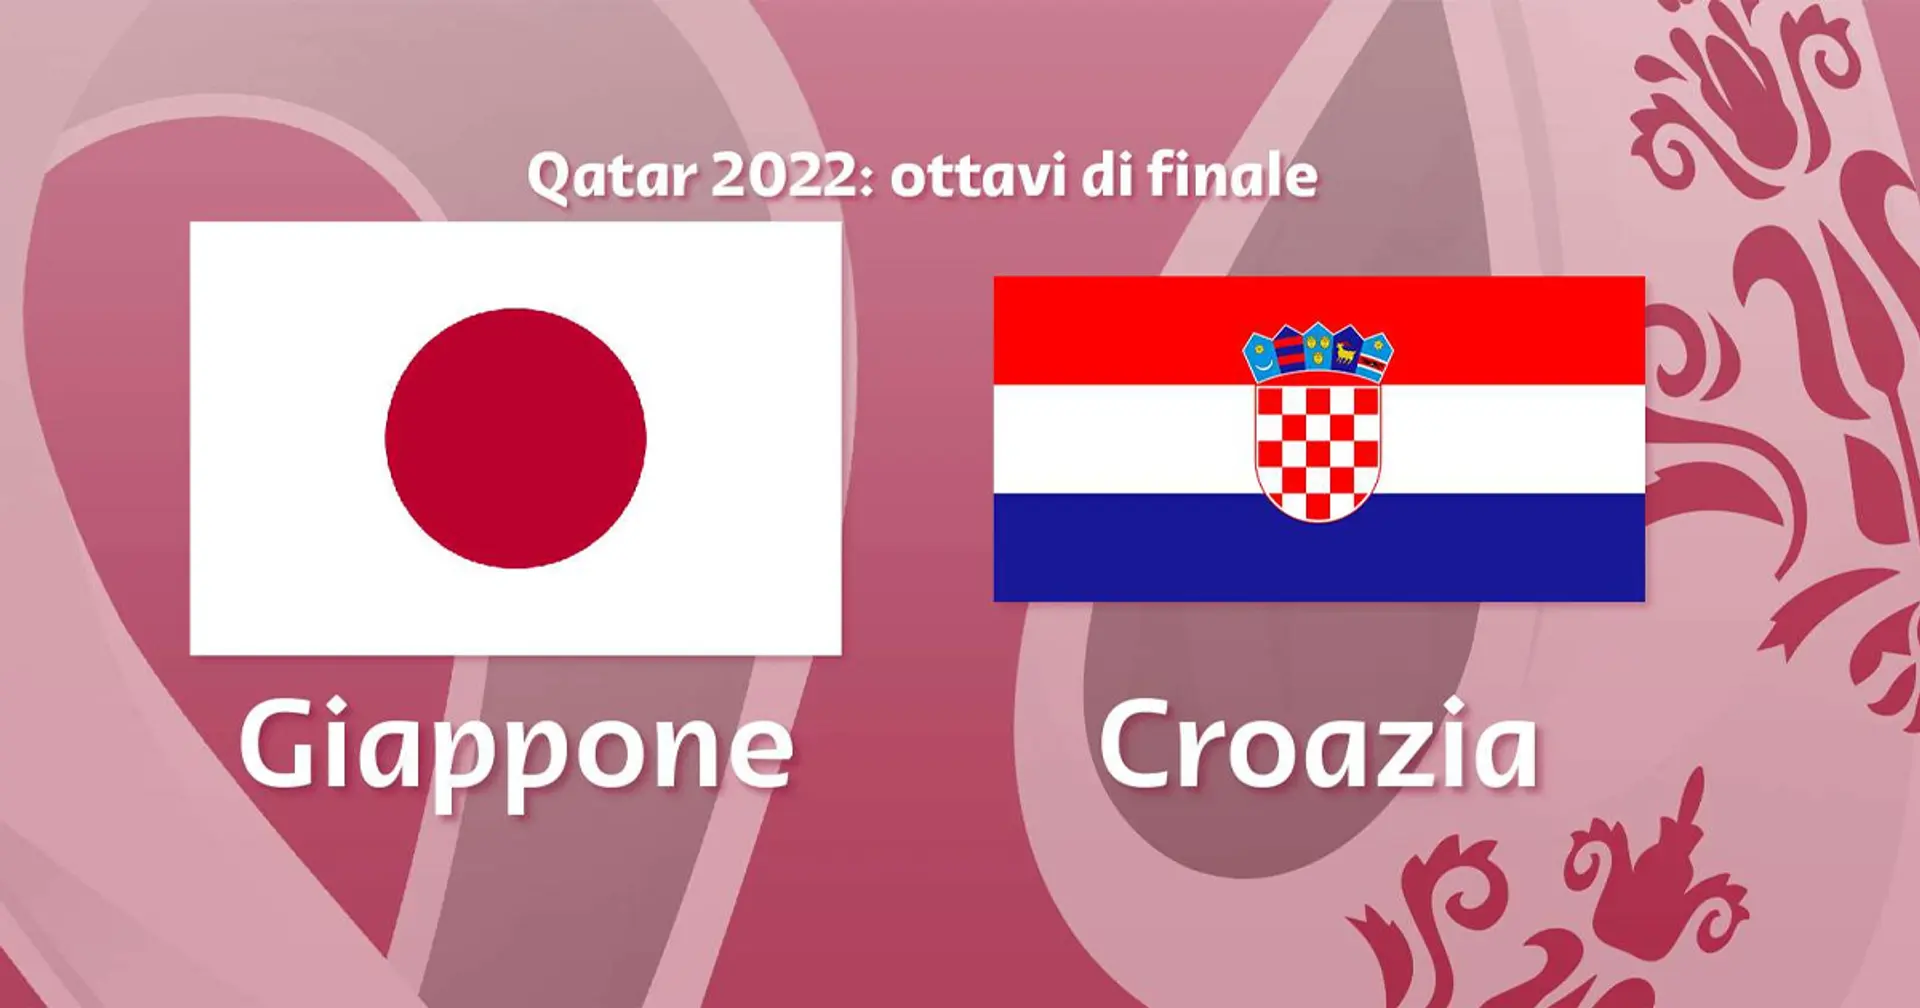 Giappone vs Croazia: le formazioni ufficiali delle squadre per la partita della Coppa del Mondo Qatar 2022 